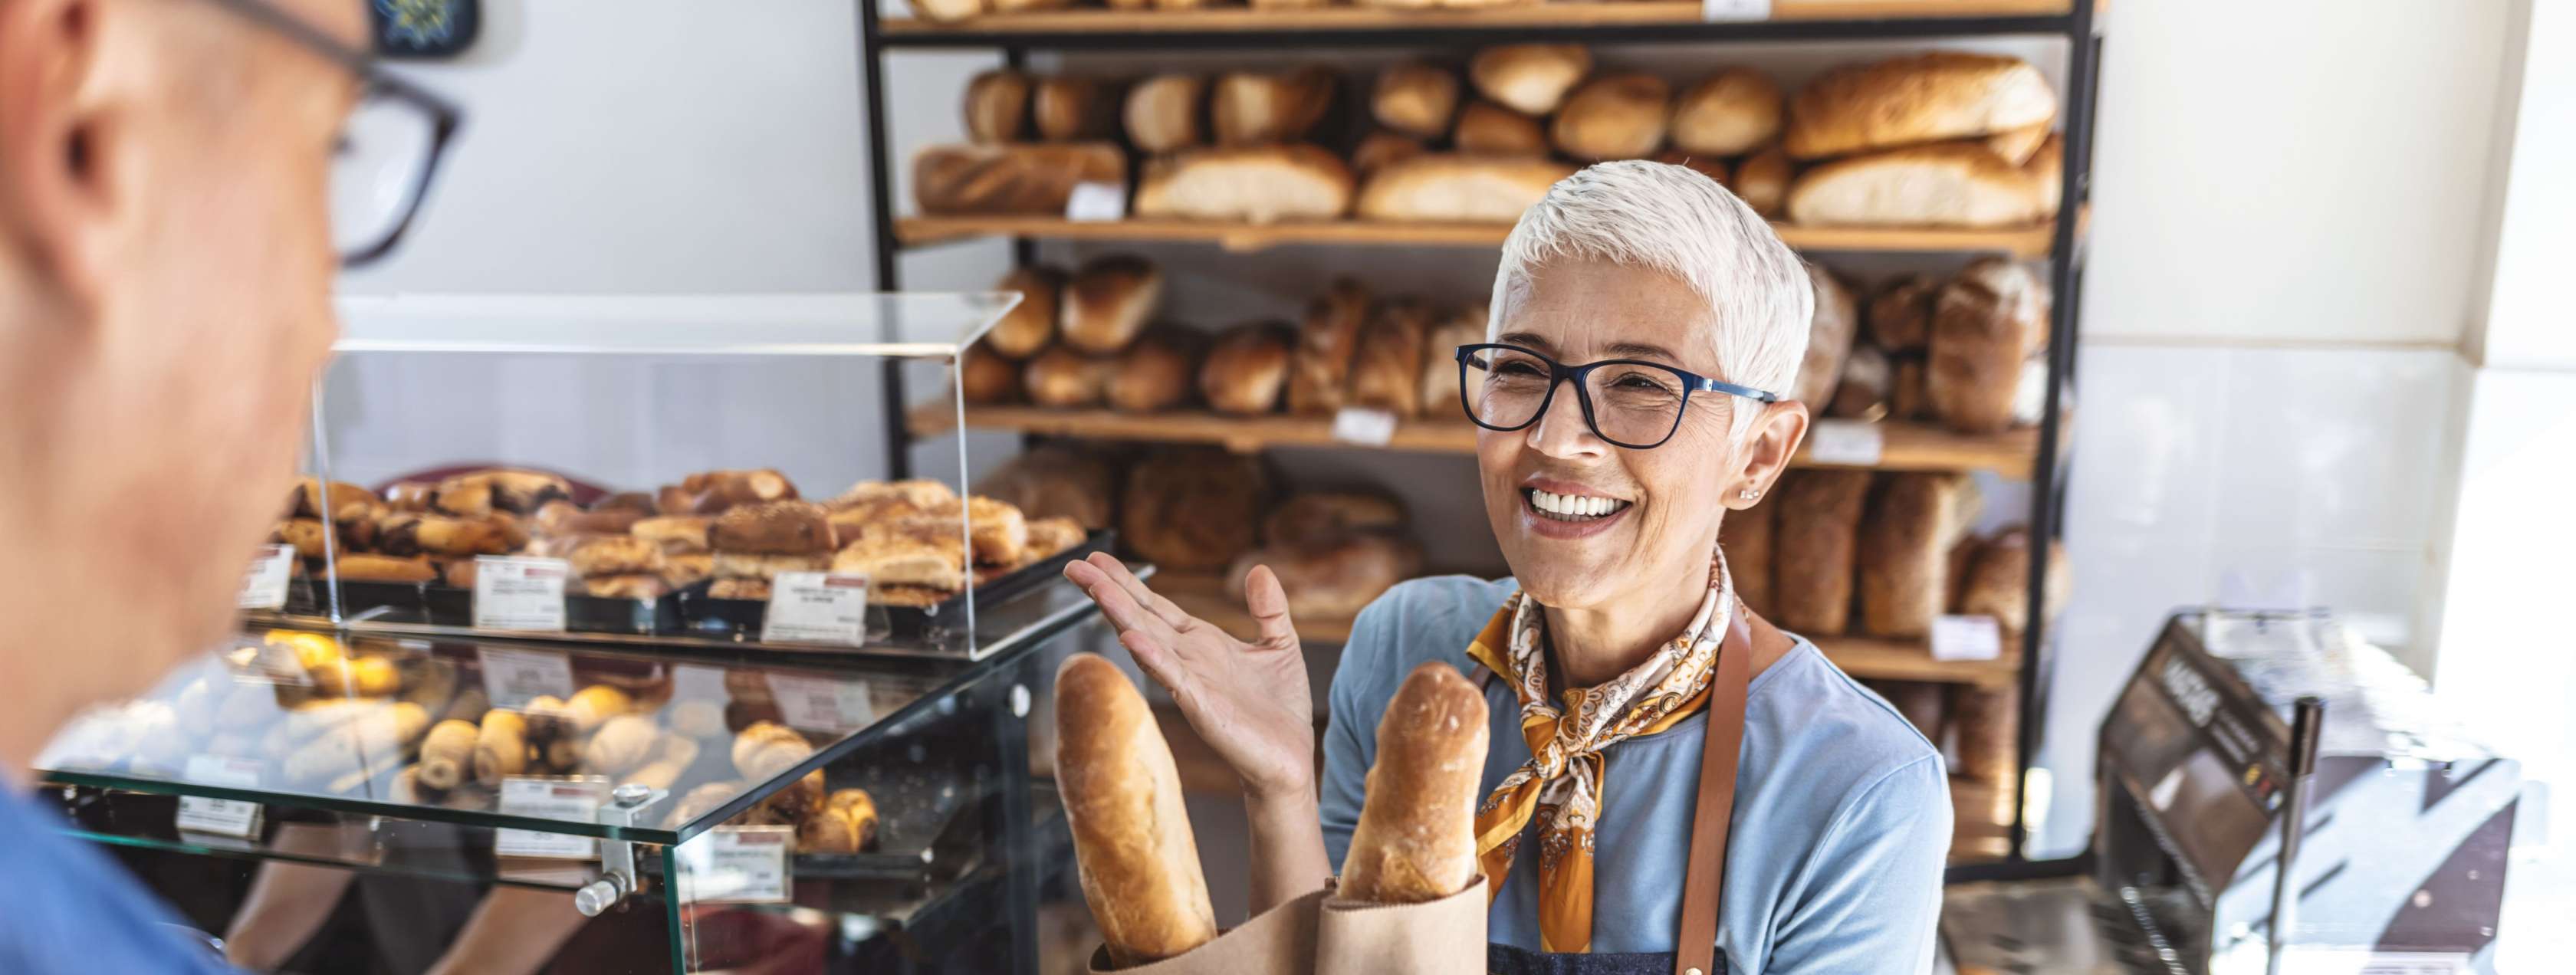 Verkäuferin steht mit Broten in der Hand hinter dem Tresen eines Ladens